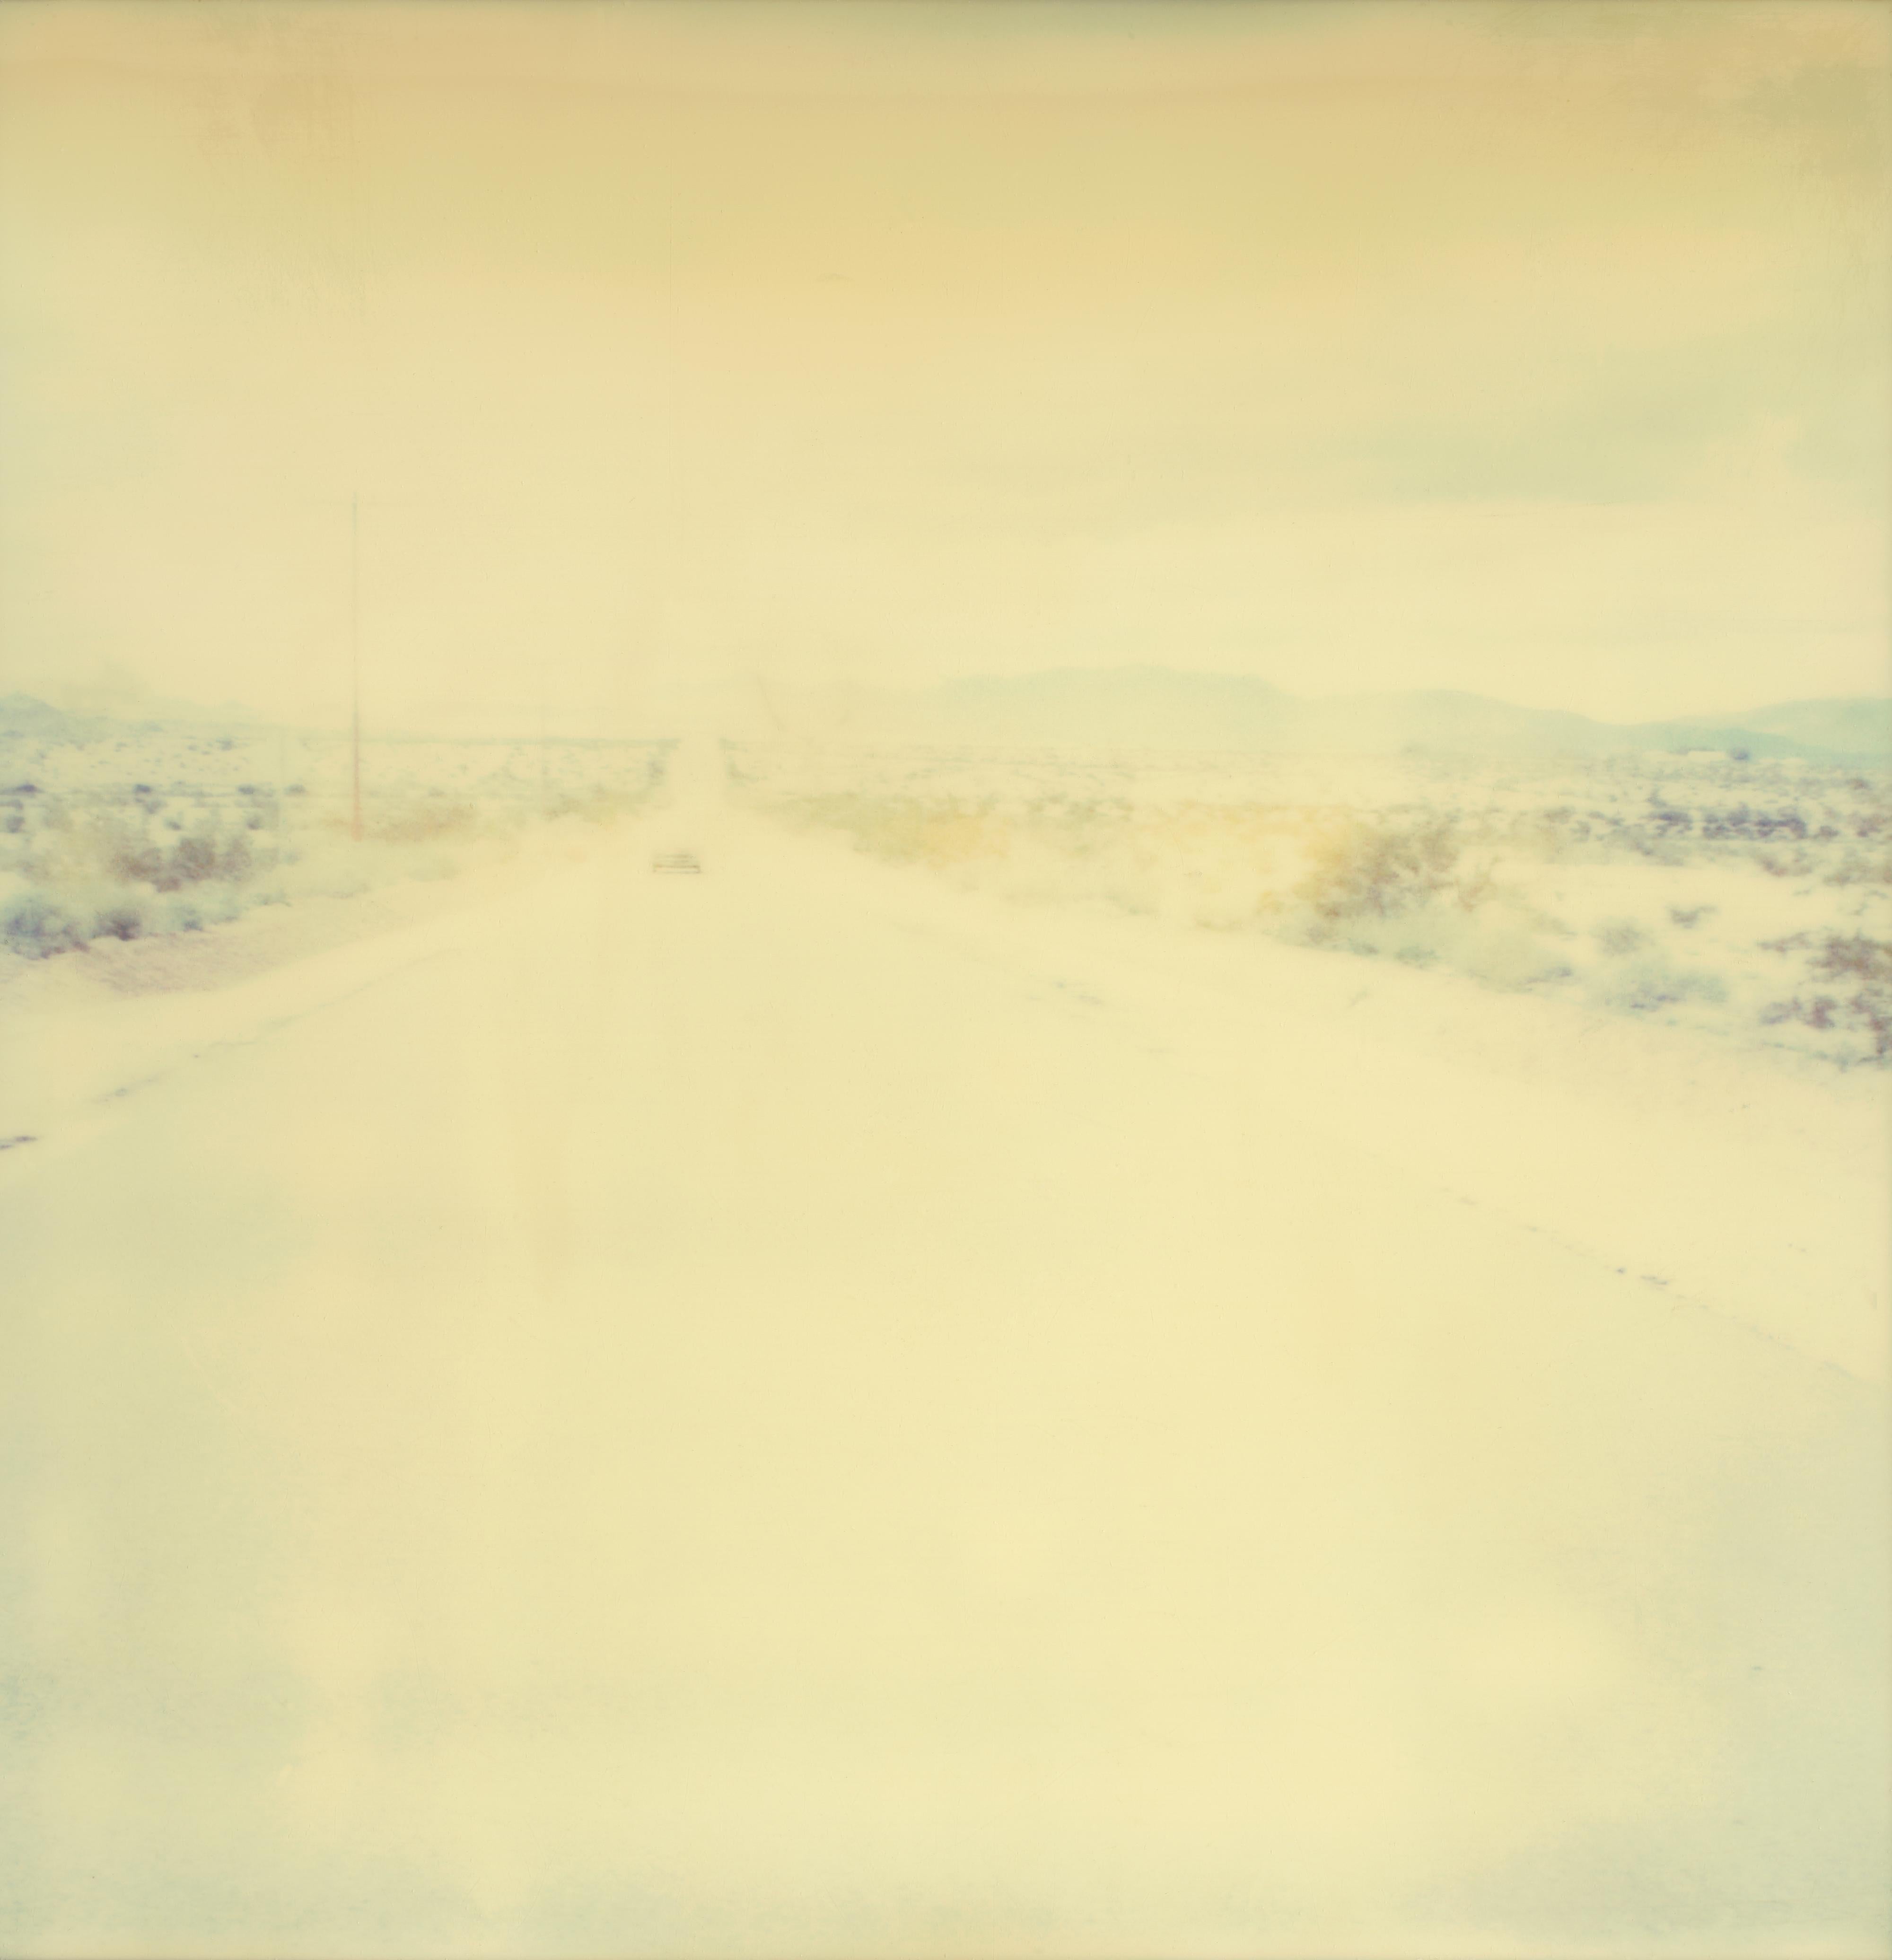 Leaving III (Sidewinder) - Polaroid, 21st Century, Contemporary - Beige Color Photograph by Stefanie Schneider